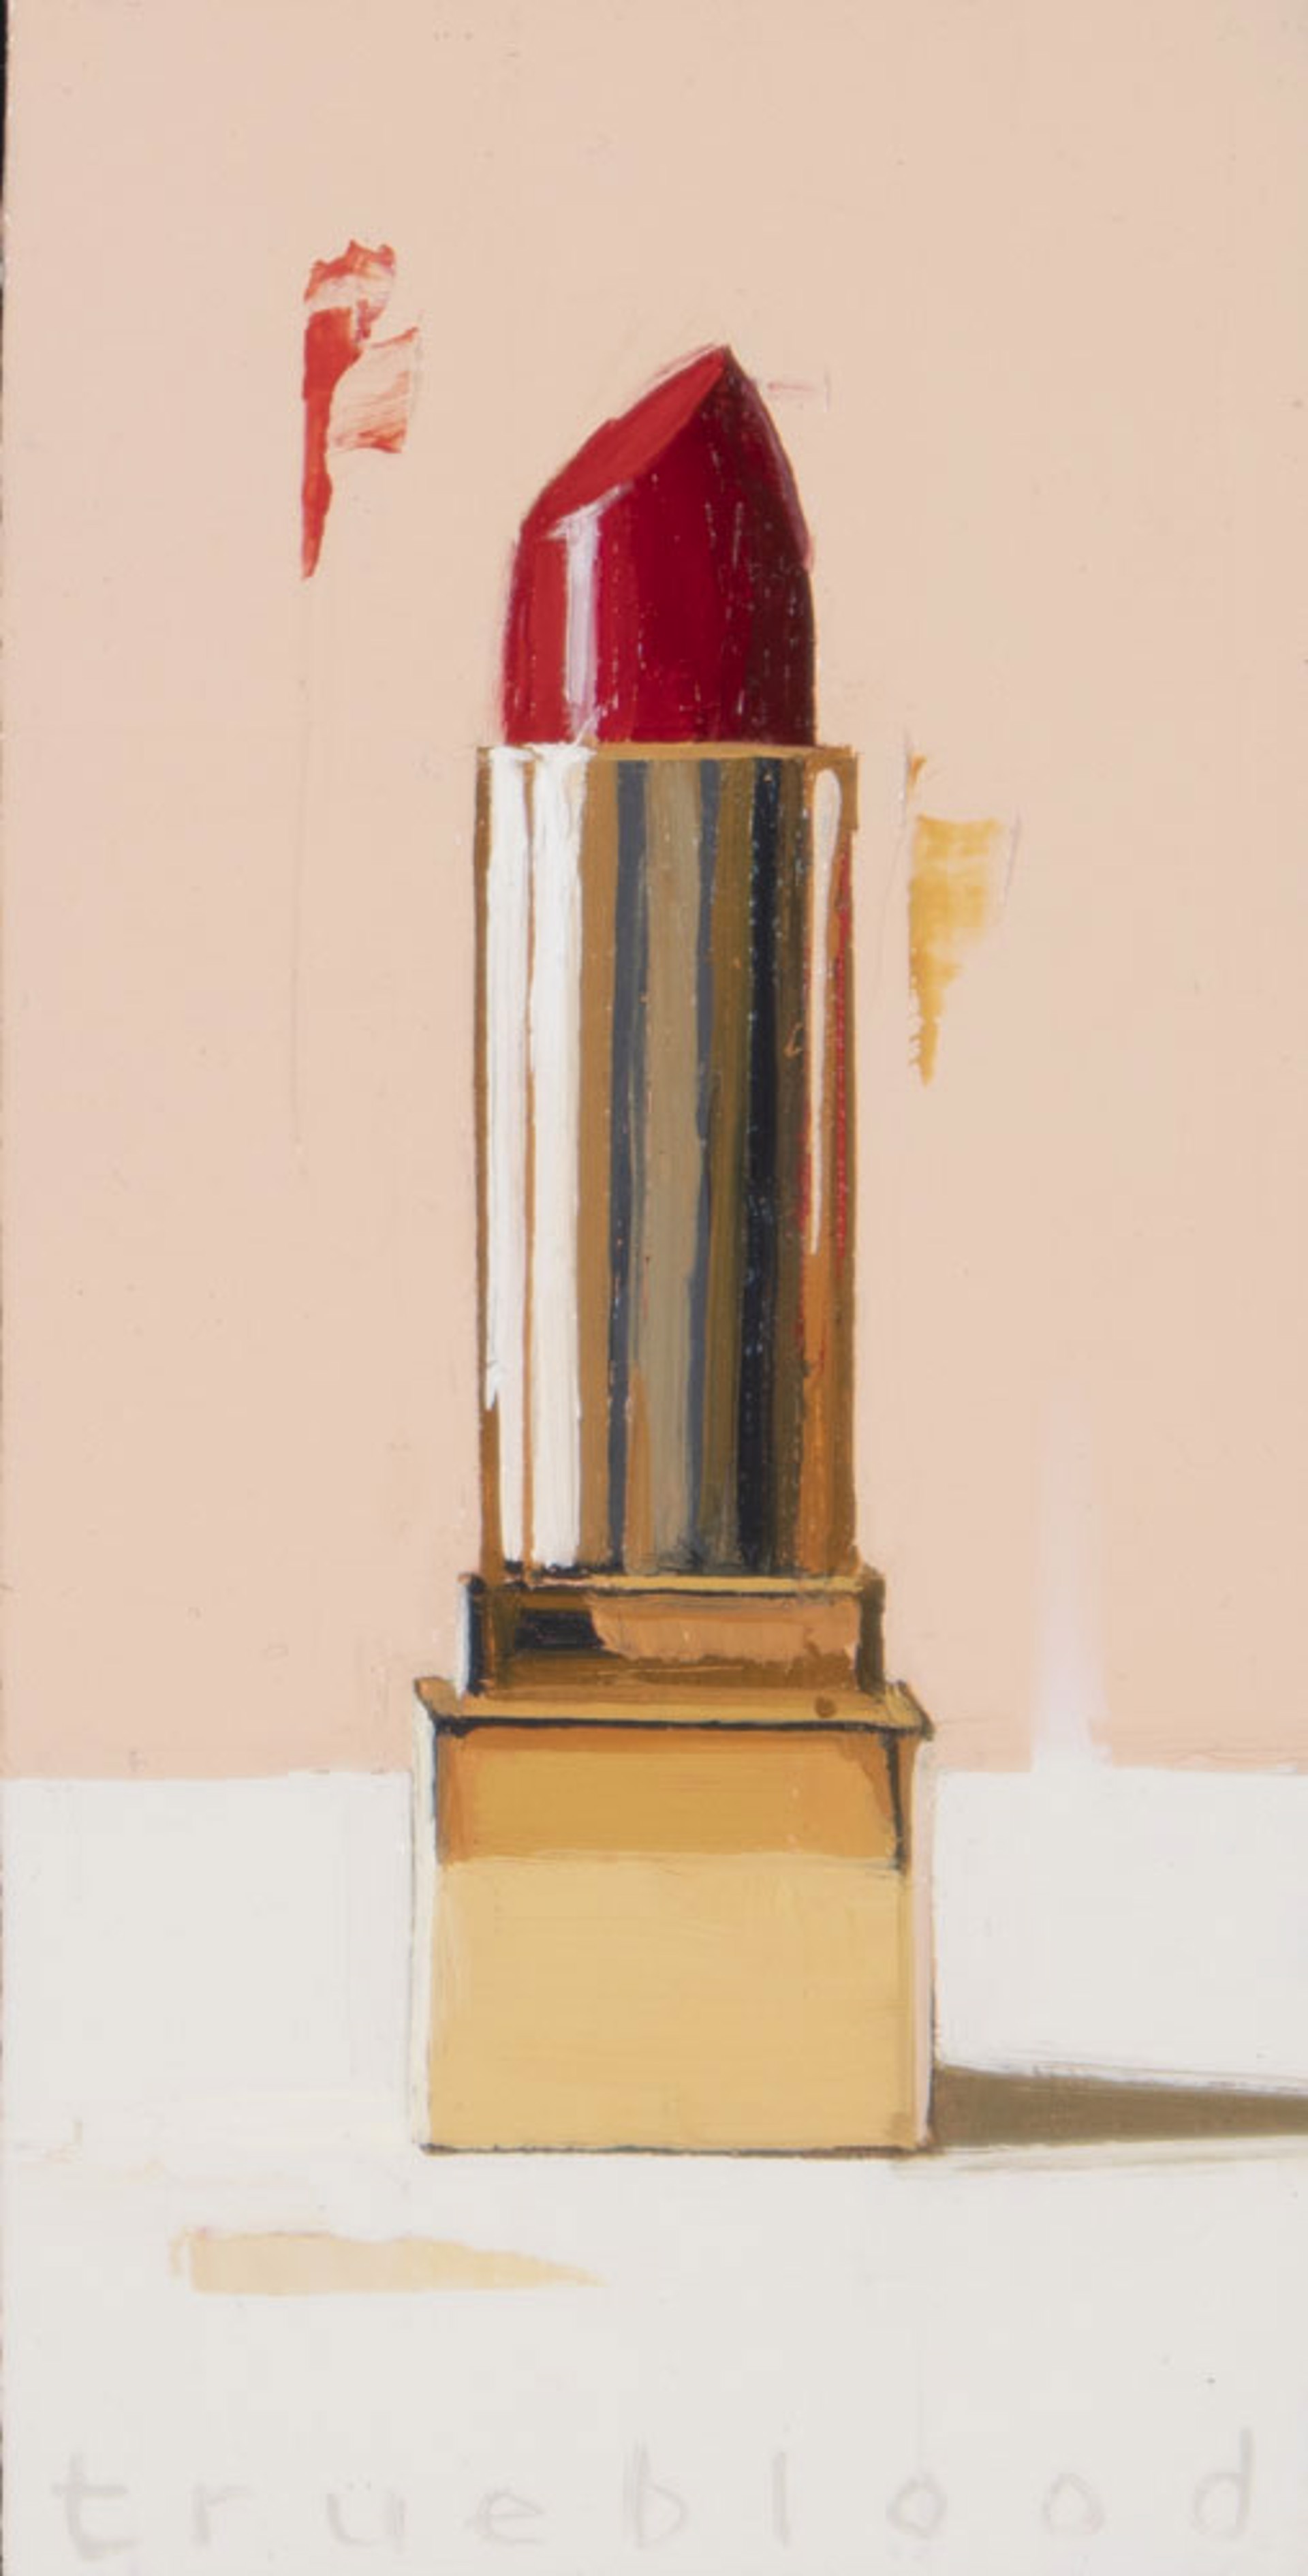 Red Lipstick by Megan Trueblood